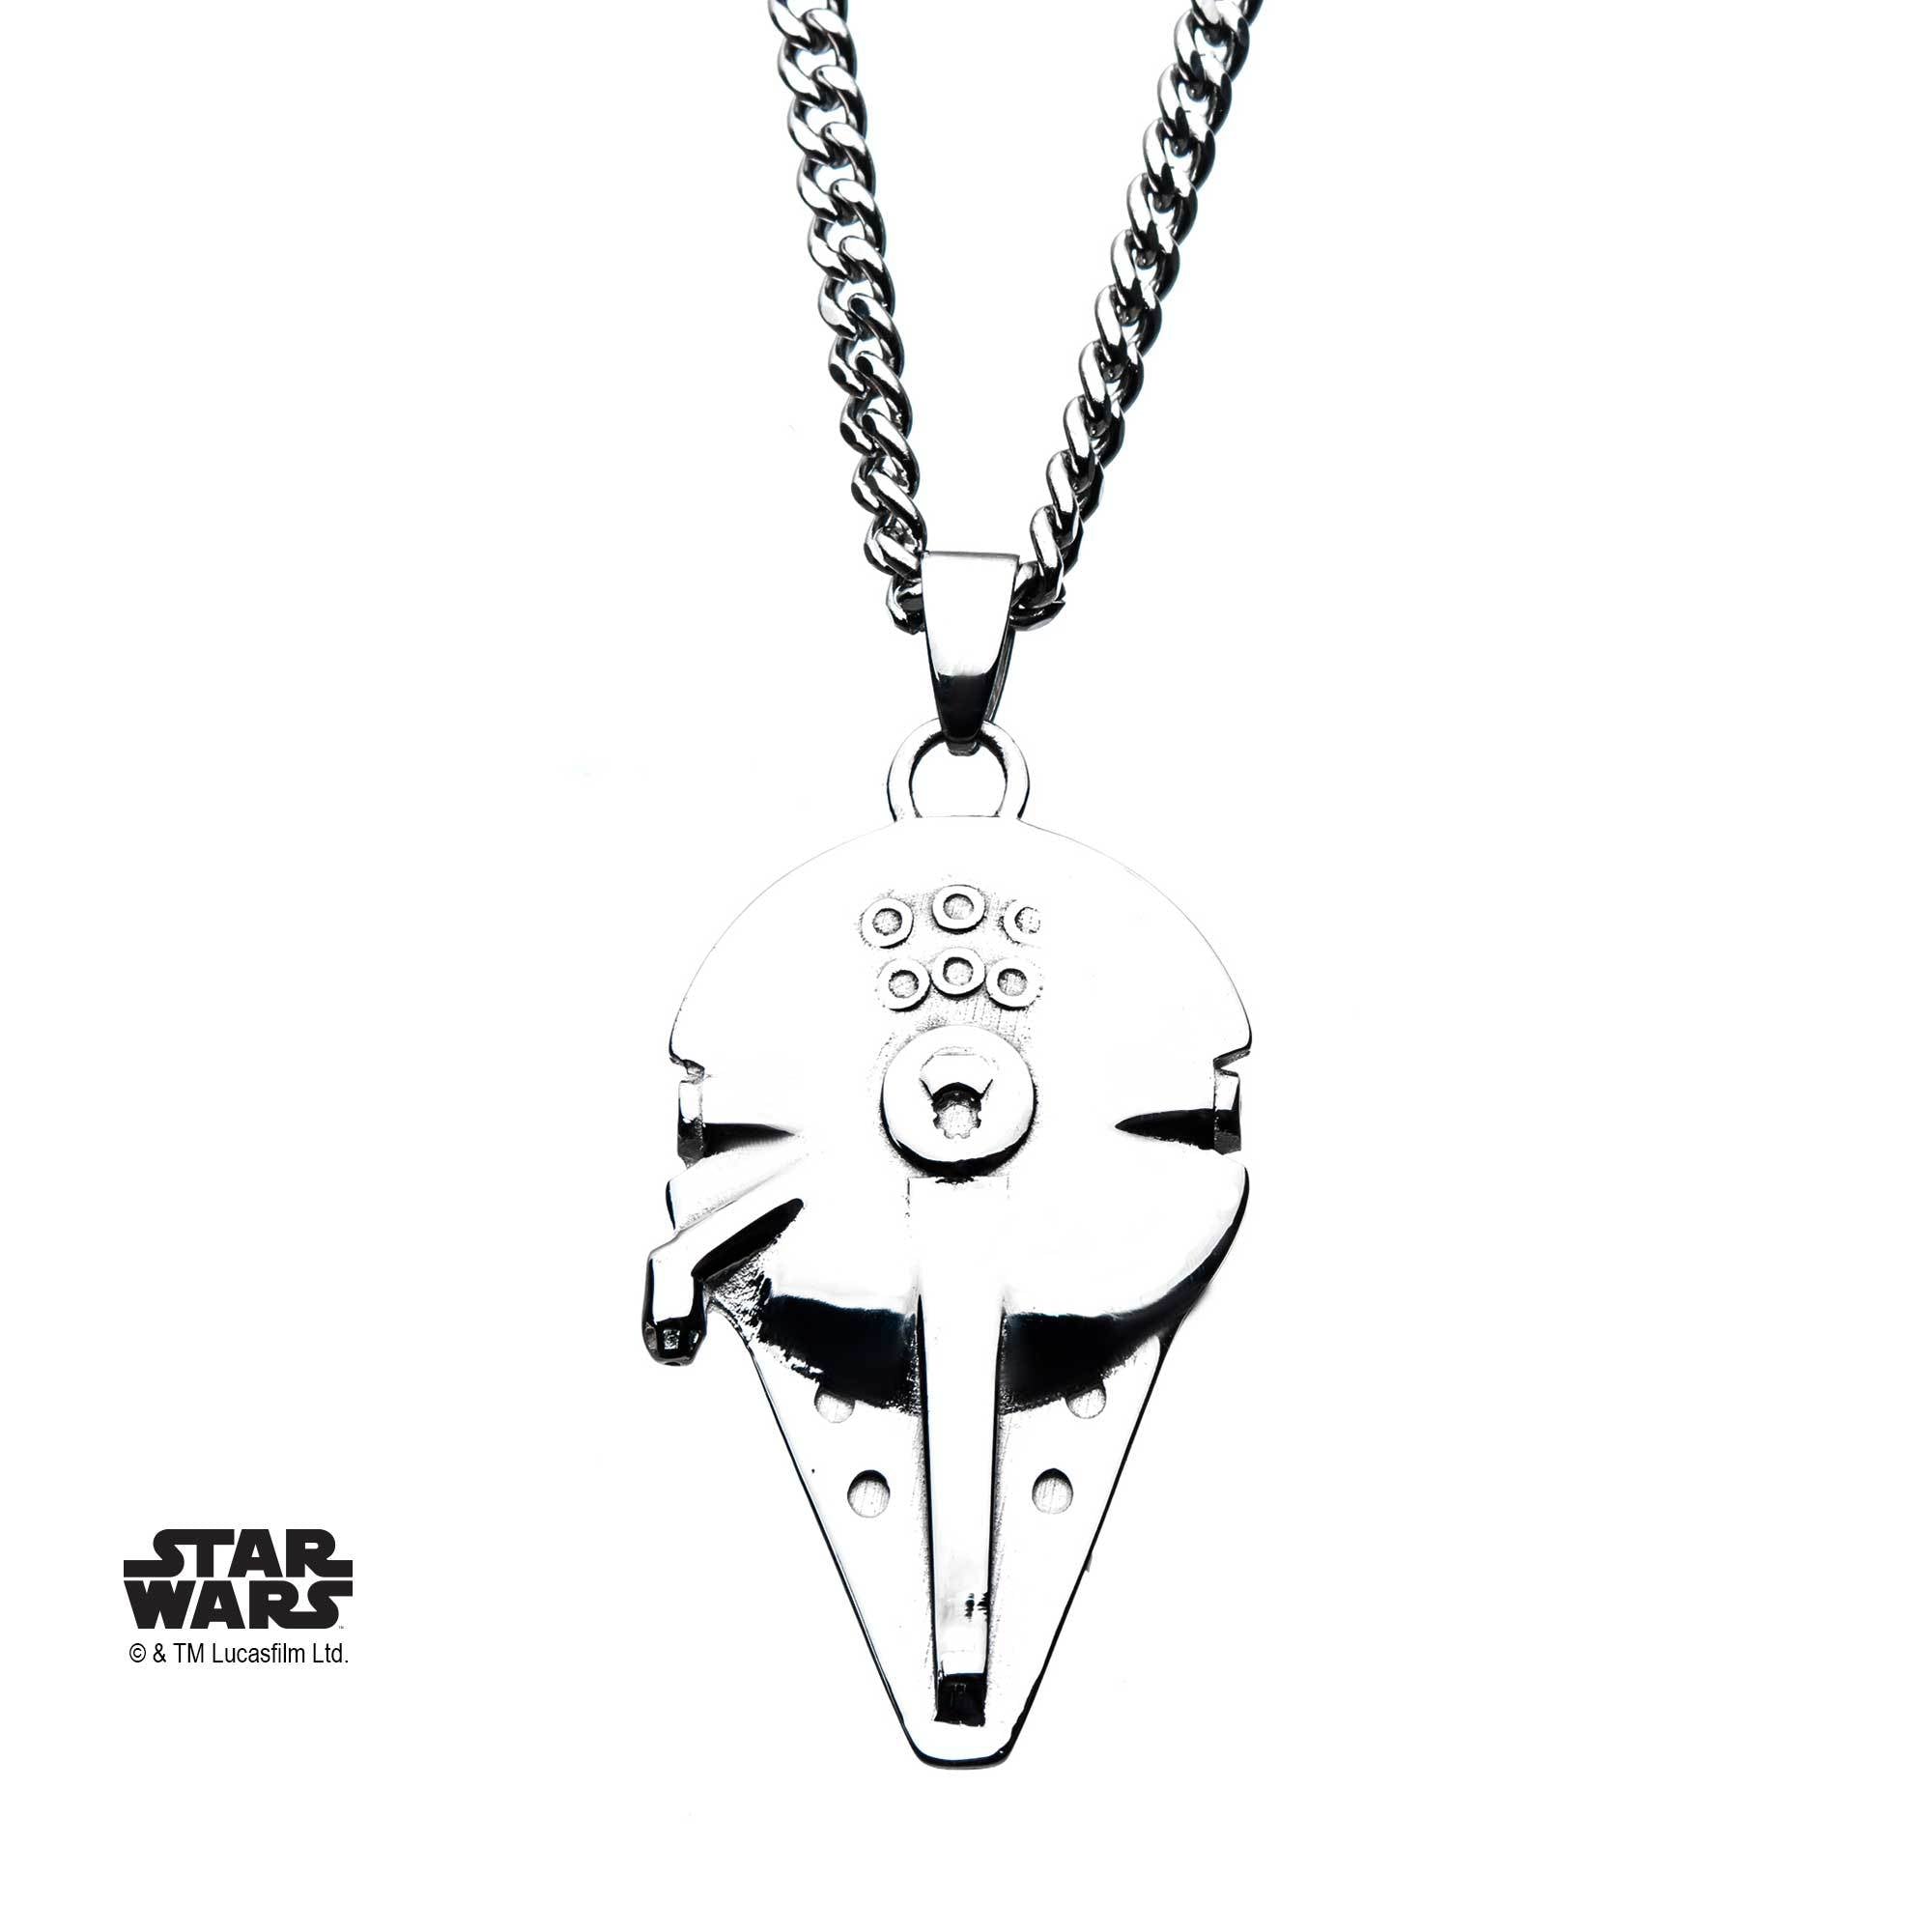 Star Wars Millennium Falcon Pendant Necklace